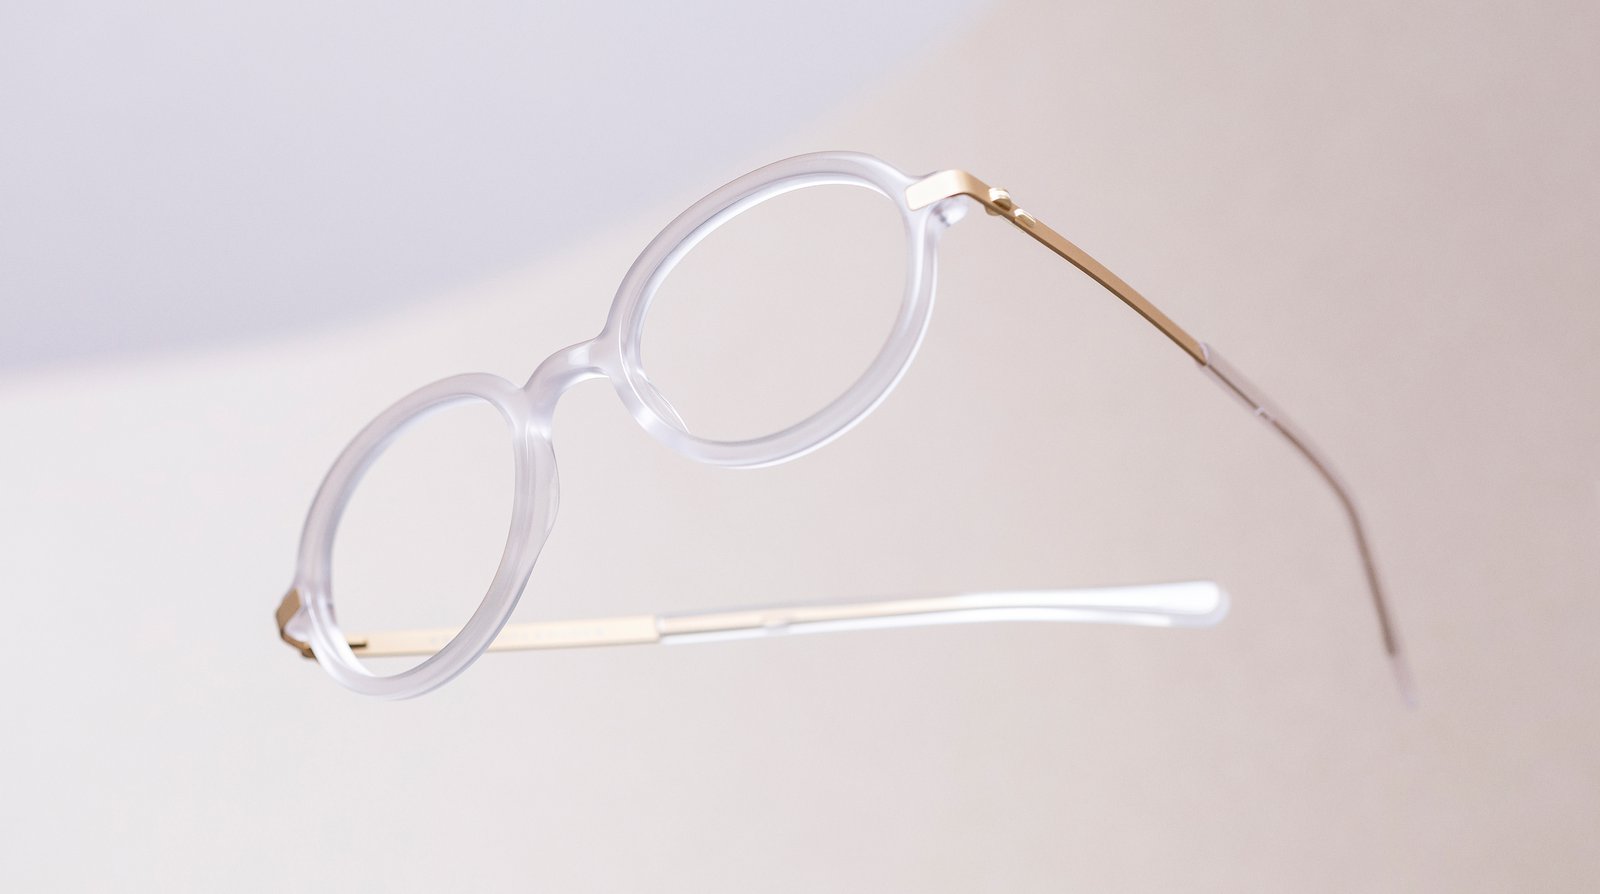 Briller fra VAERK fra artiklen The Best Independent Eyewear Brands udgivet af FAVR the premium eyewear finder.